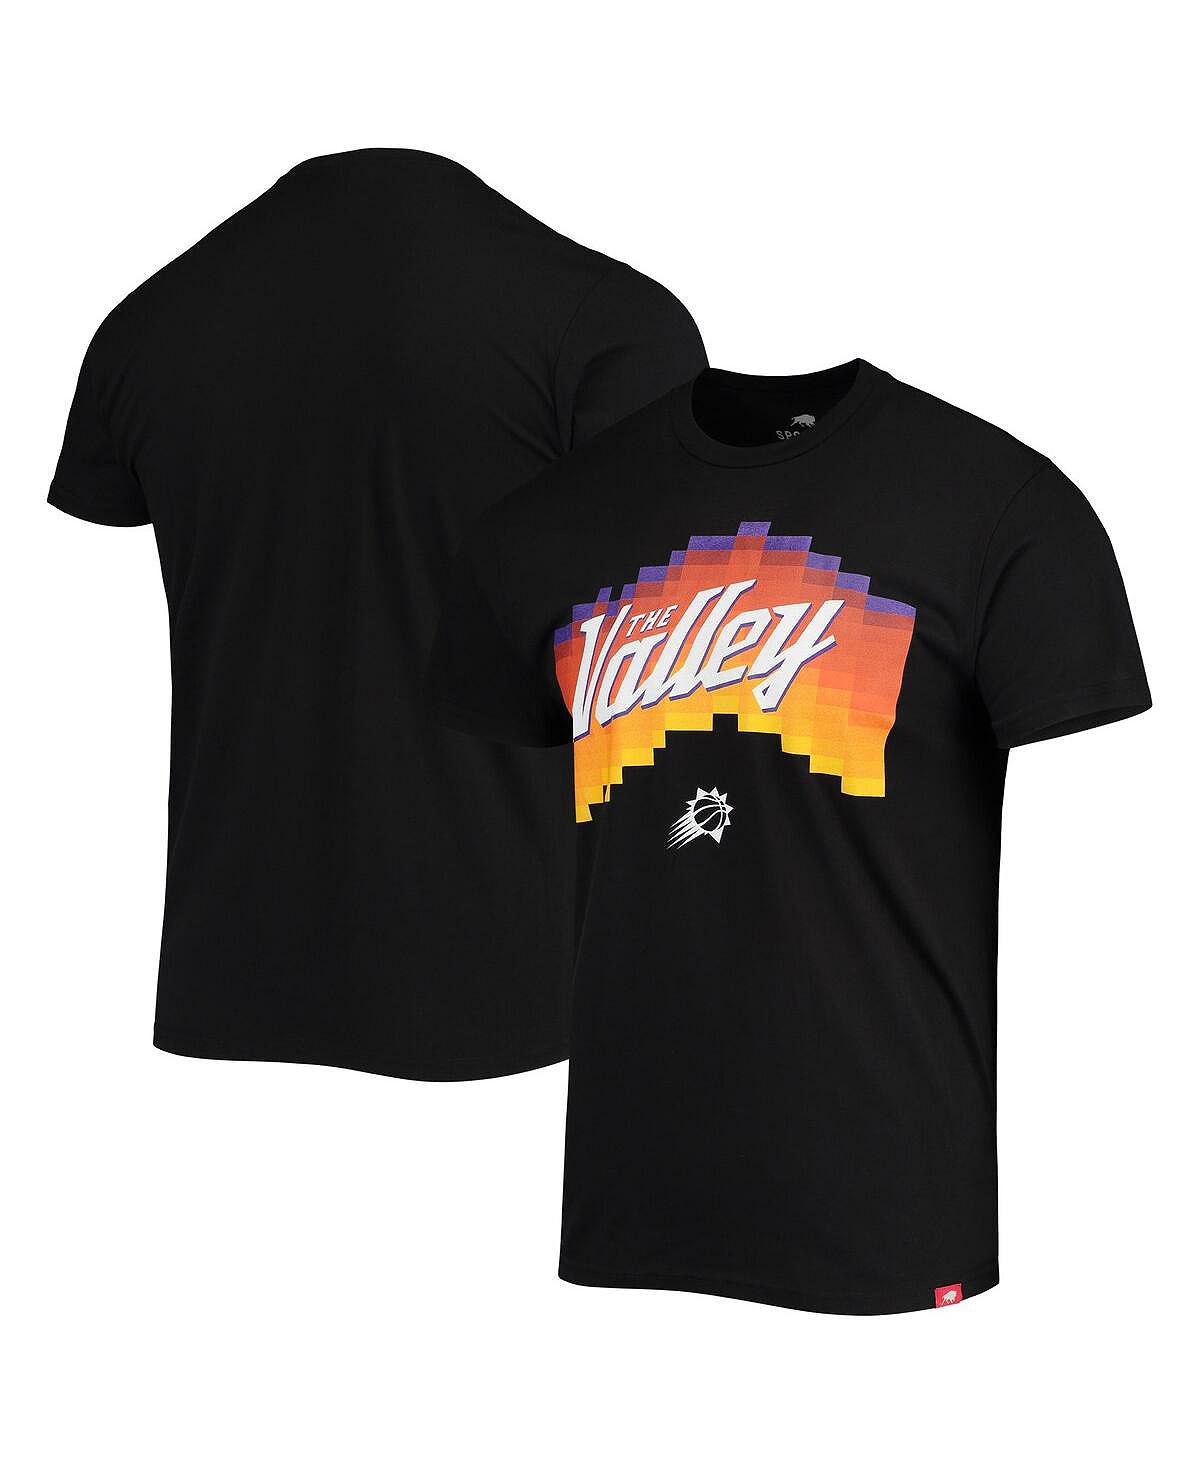 Мужская черная футболка phoenix suns the valley pixel city edition tri-blend Sportiqe, черный цена и фото